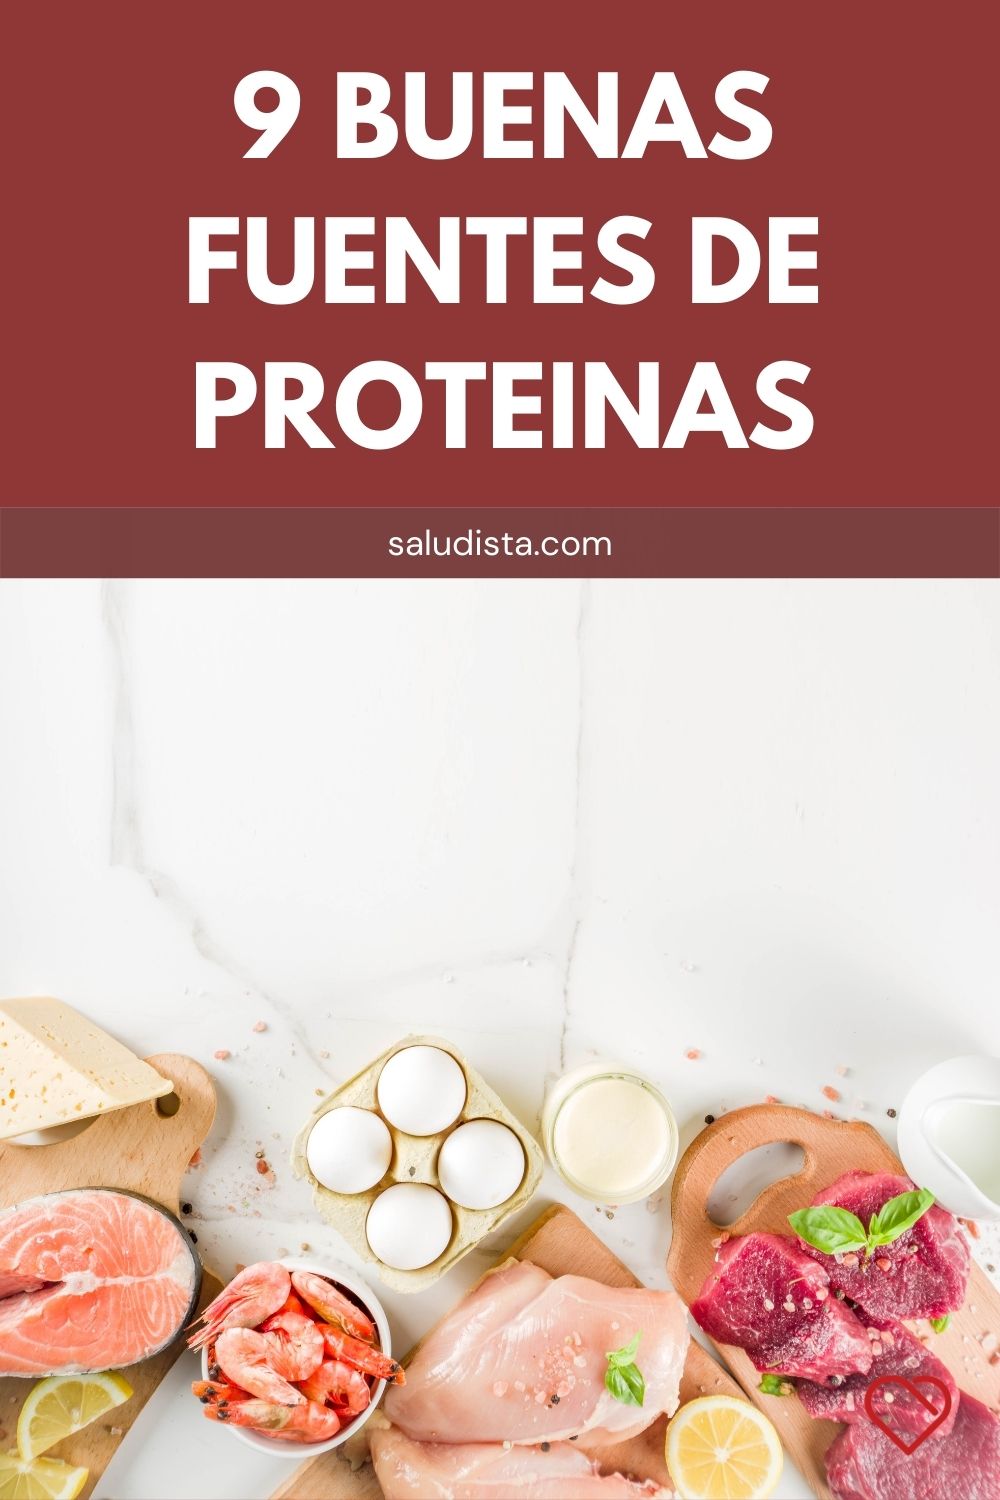 9 buenas fuentes de proteínas